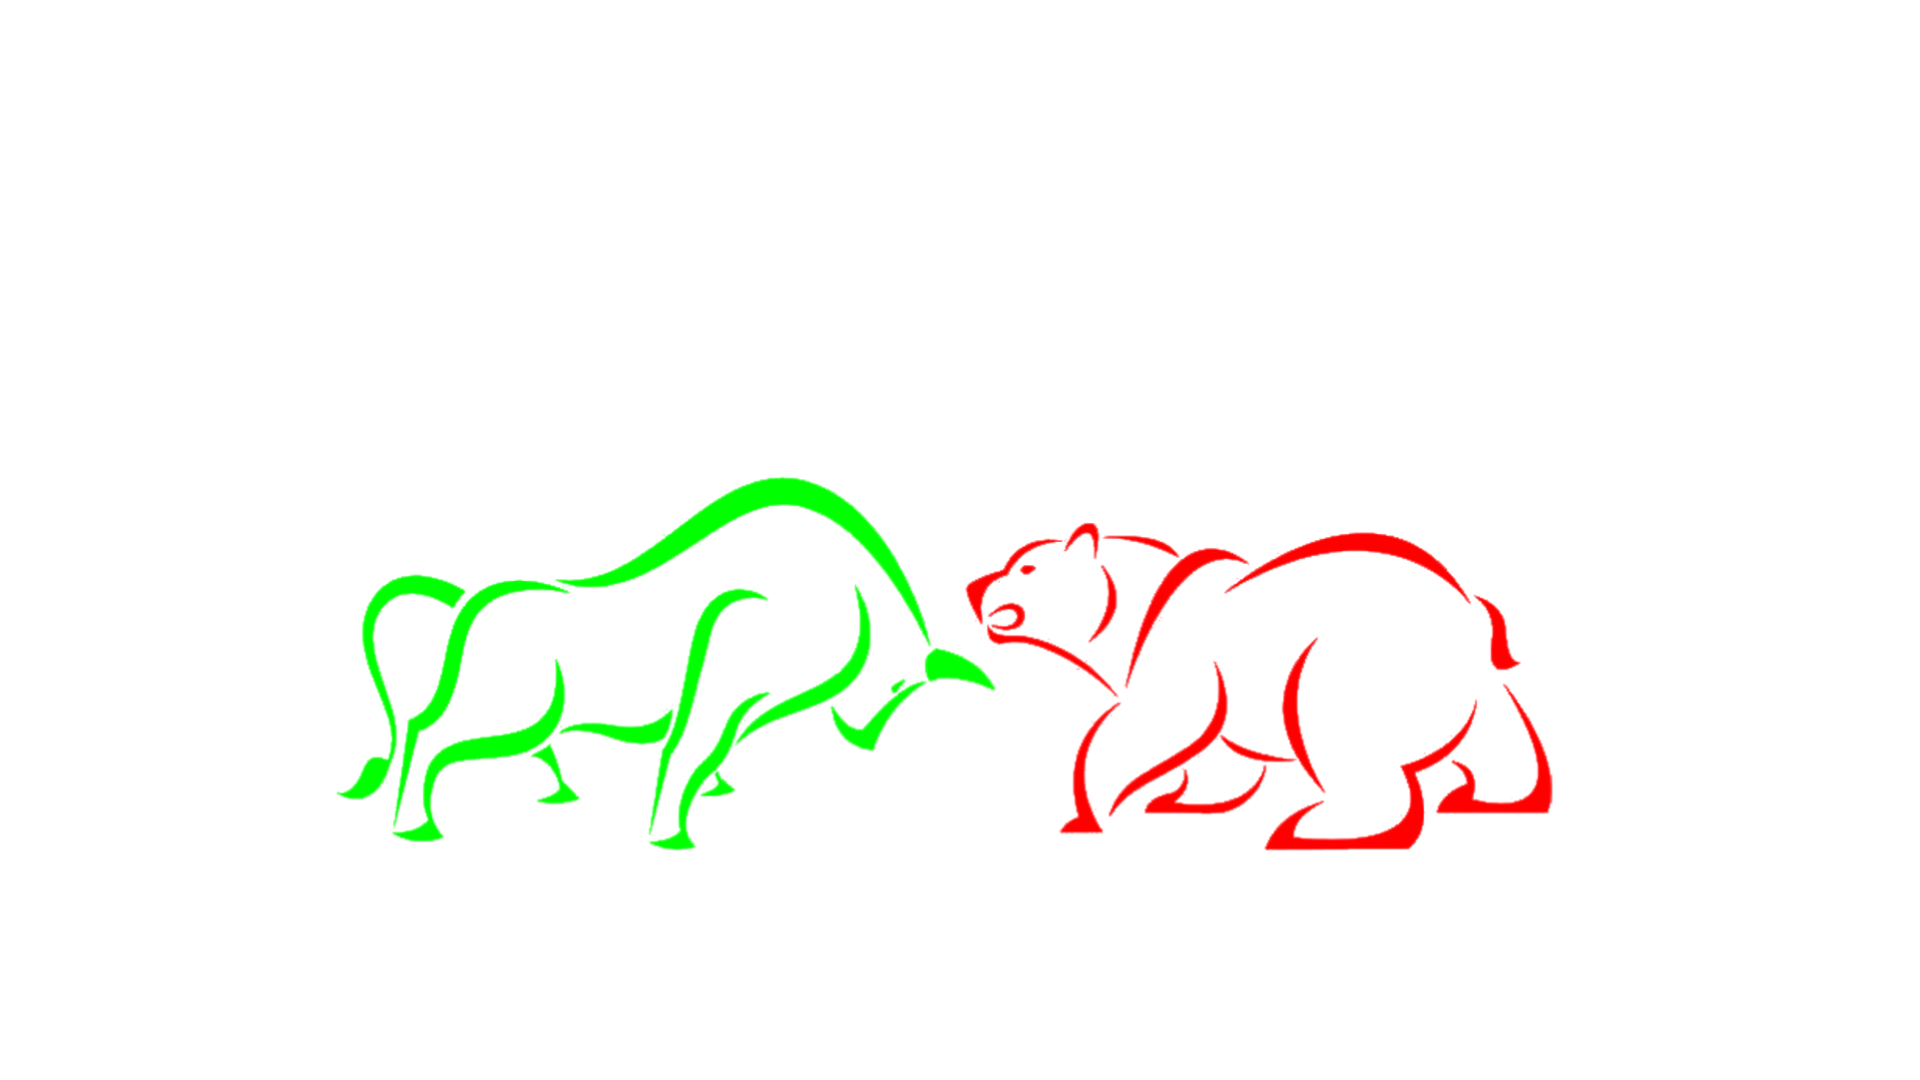 Curso Viver De Mercado do Marcelo Vaz.